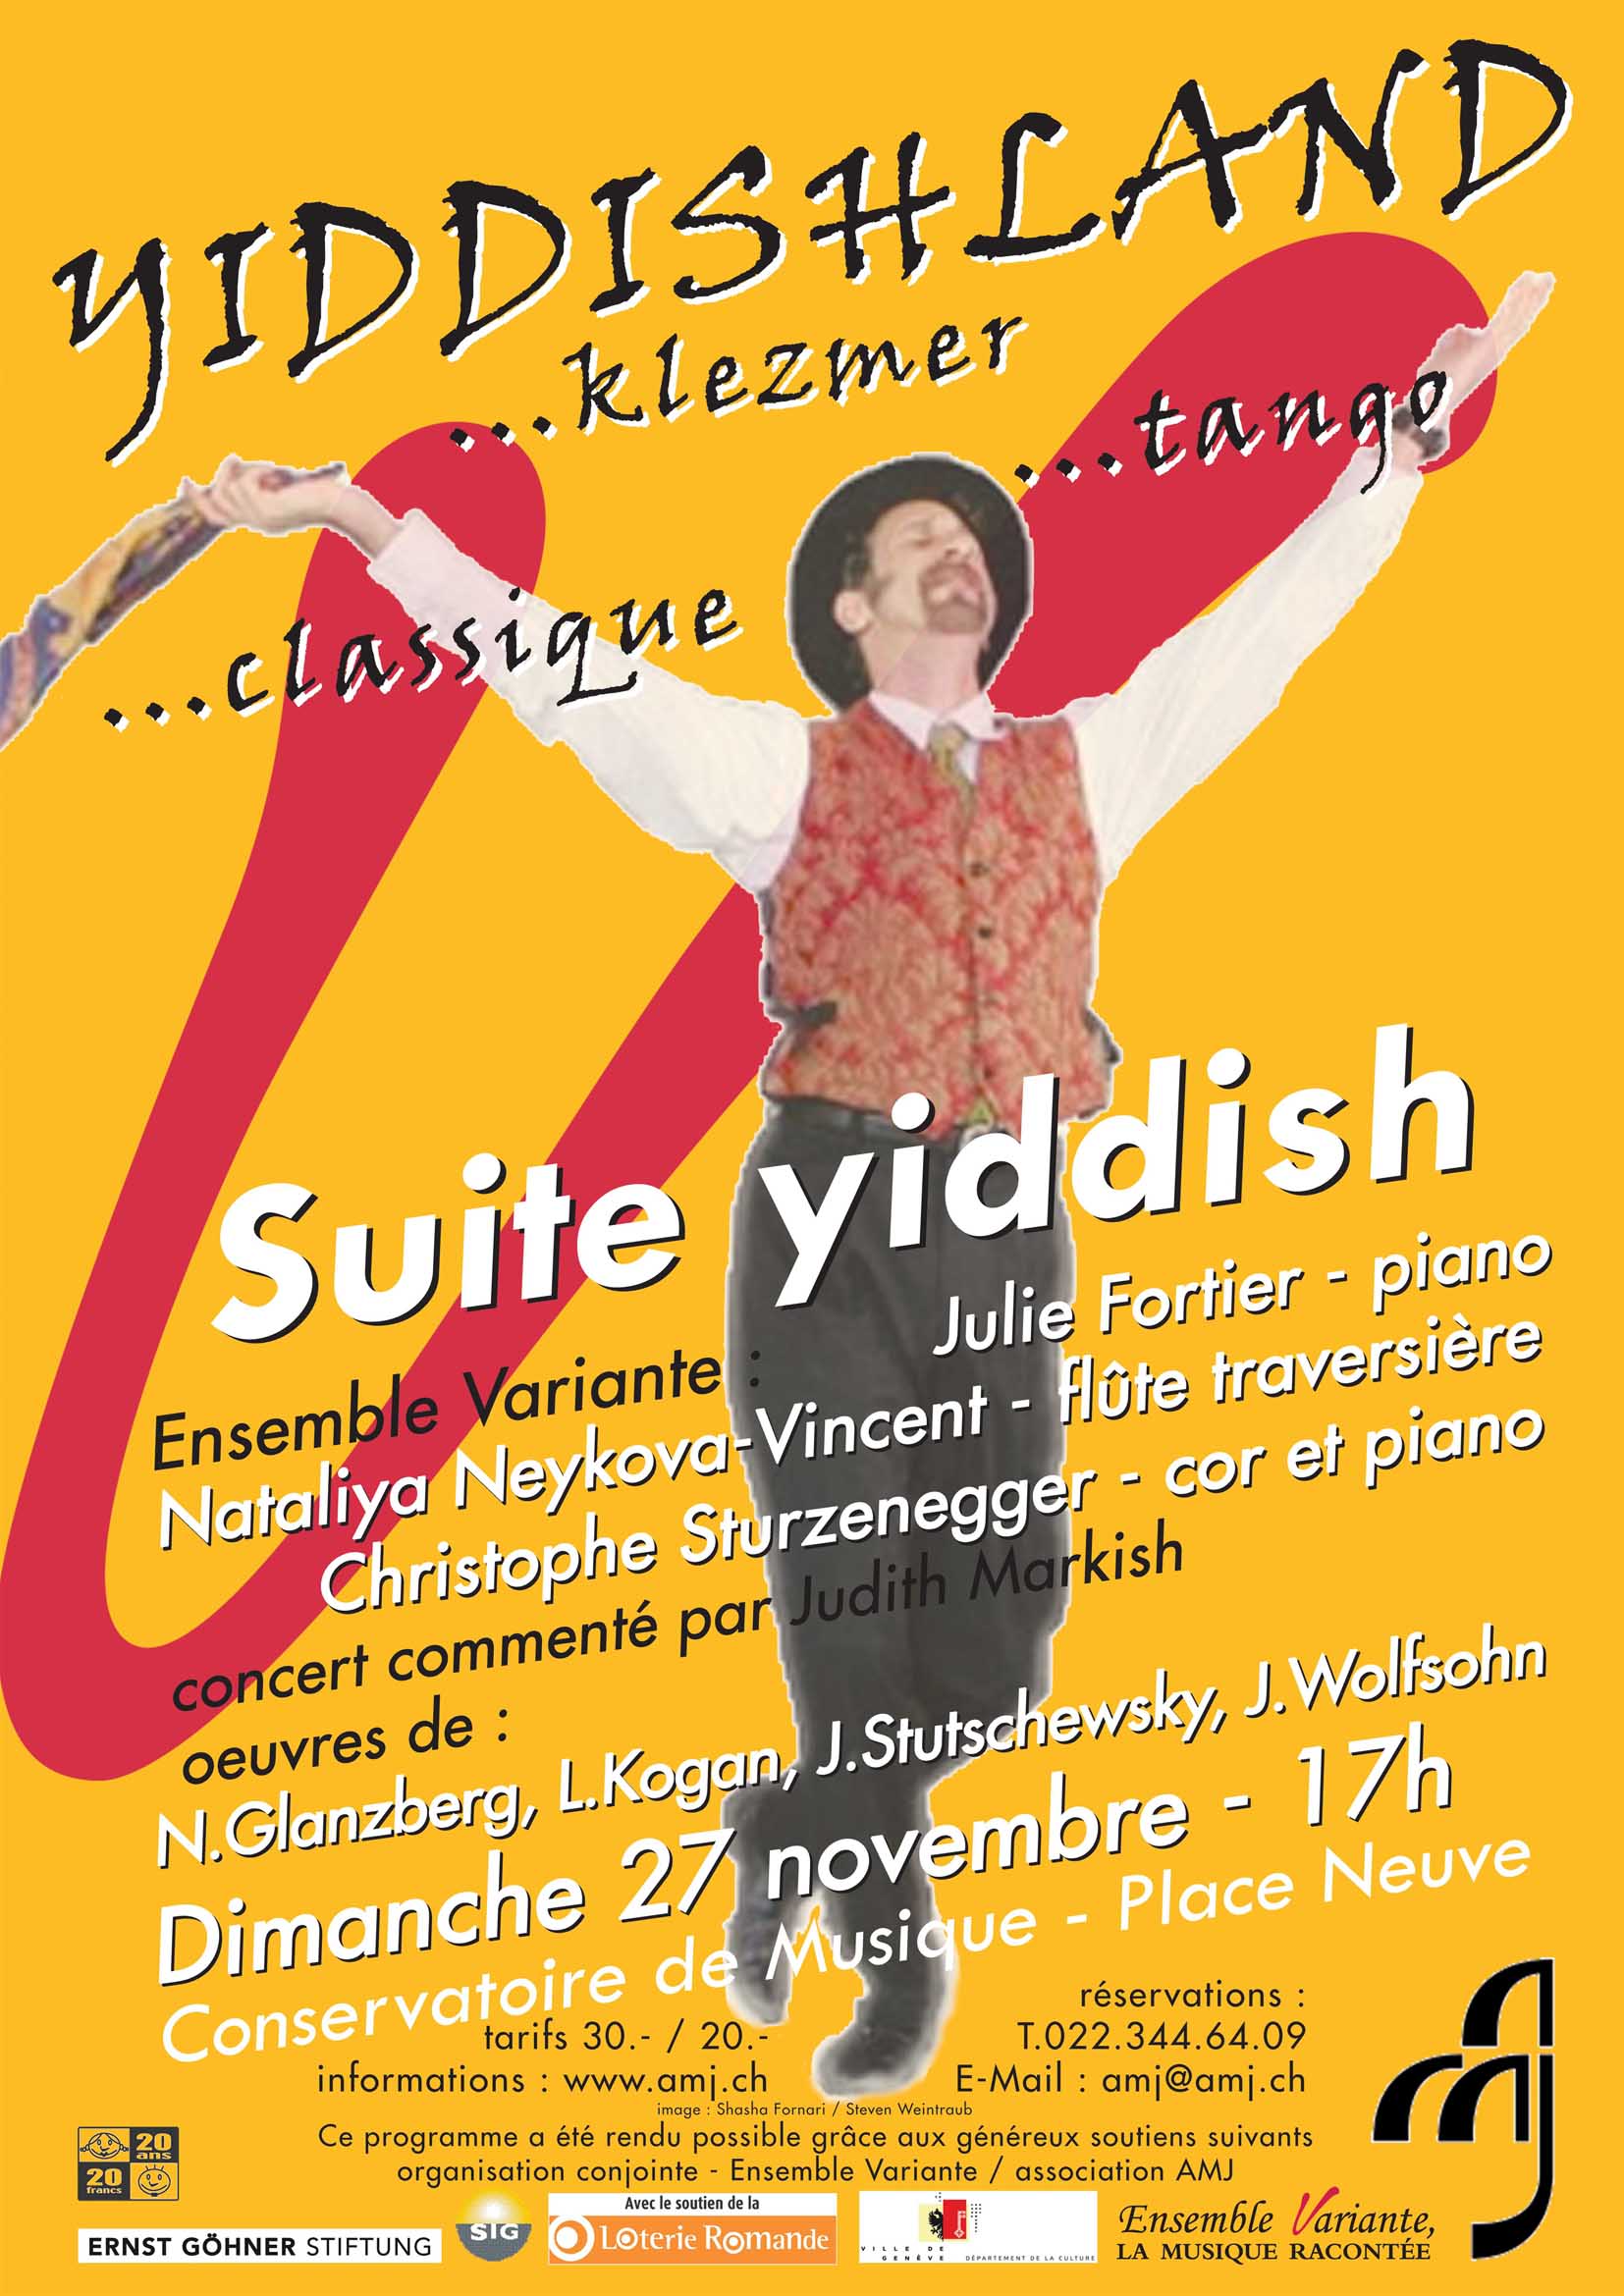 YIDDISHLAND - Suite yiddish avec l'Ensemble Variante